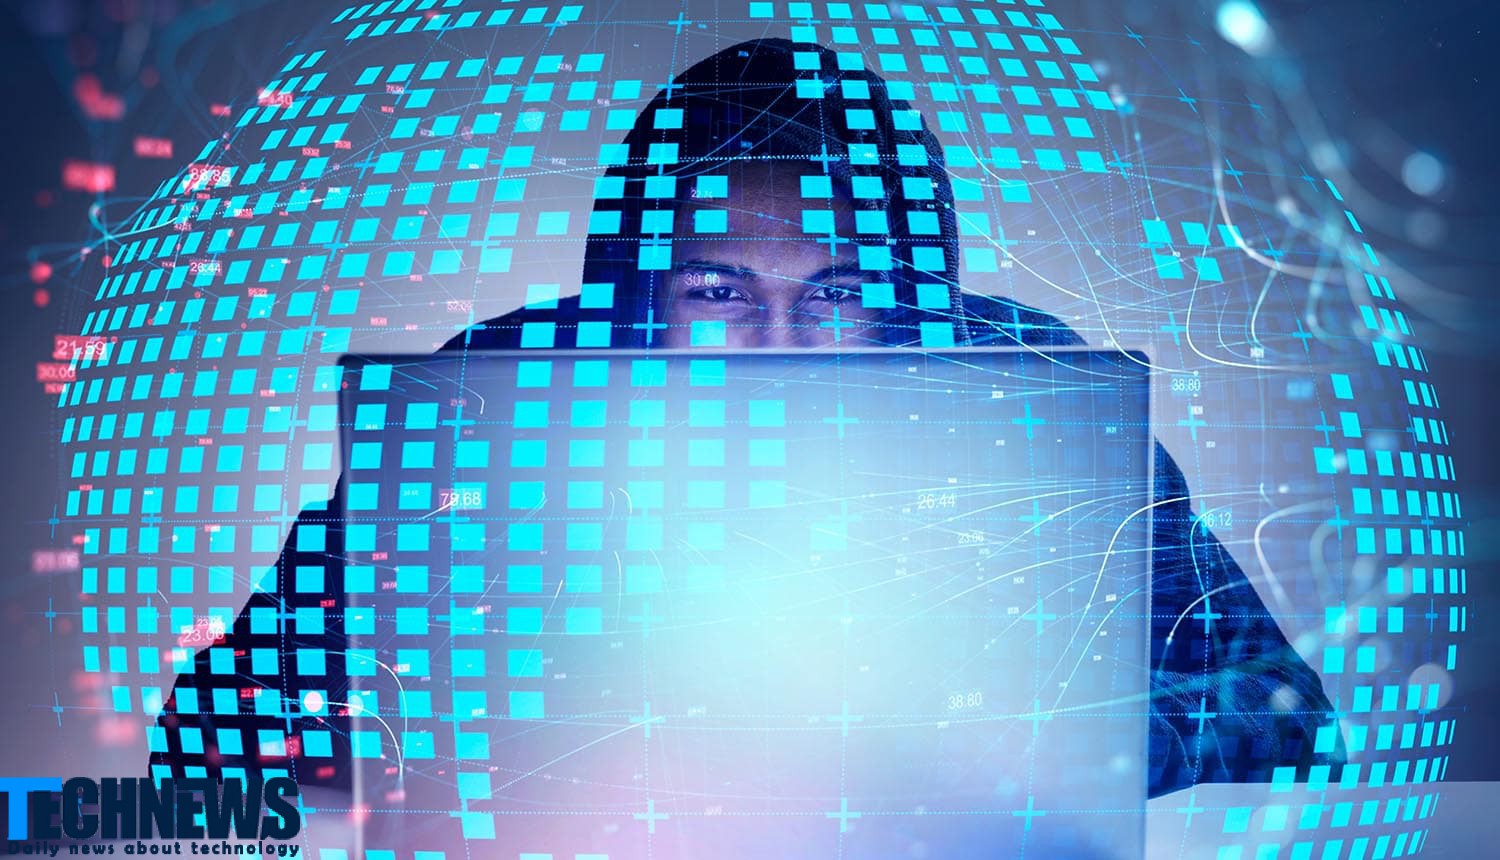 حمله هکرها به 10 شرکت و سرقت اطلاعات 73 میلیون کاربر